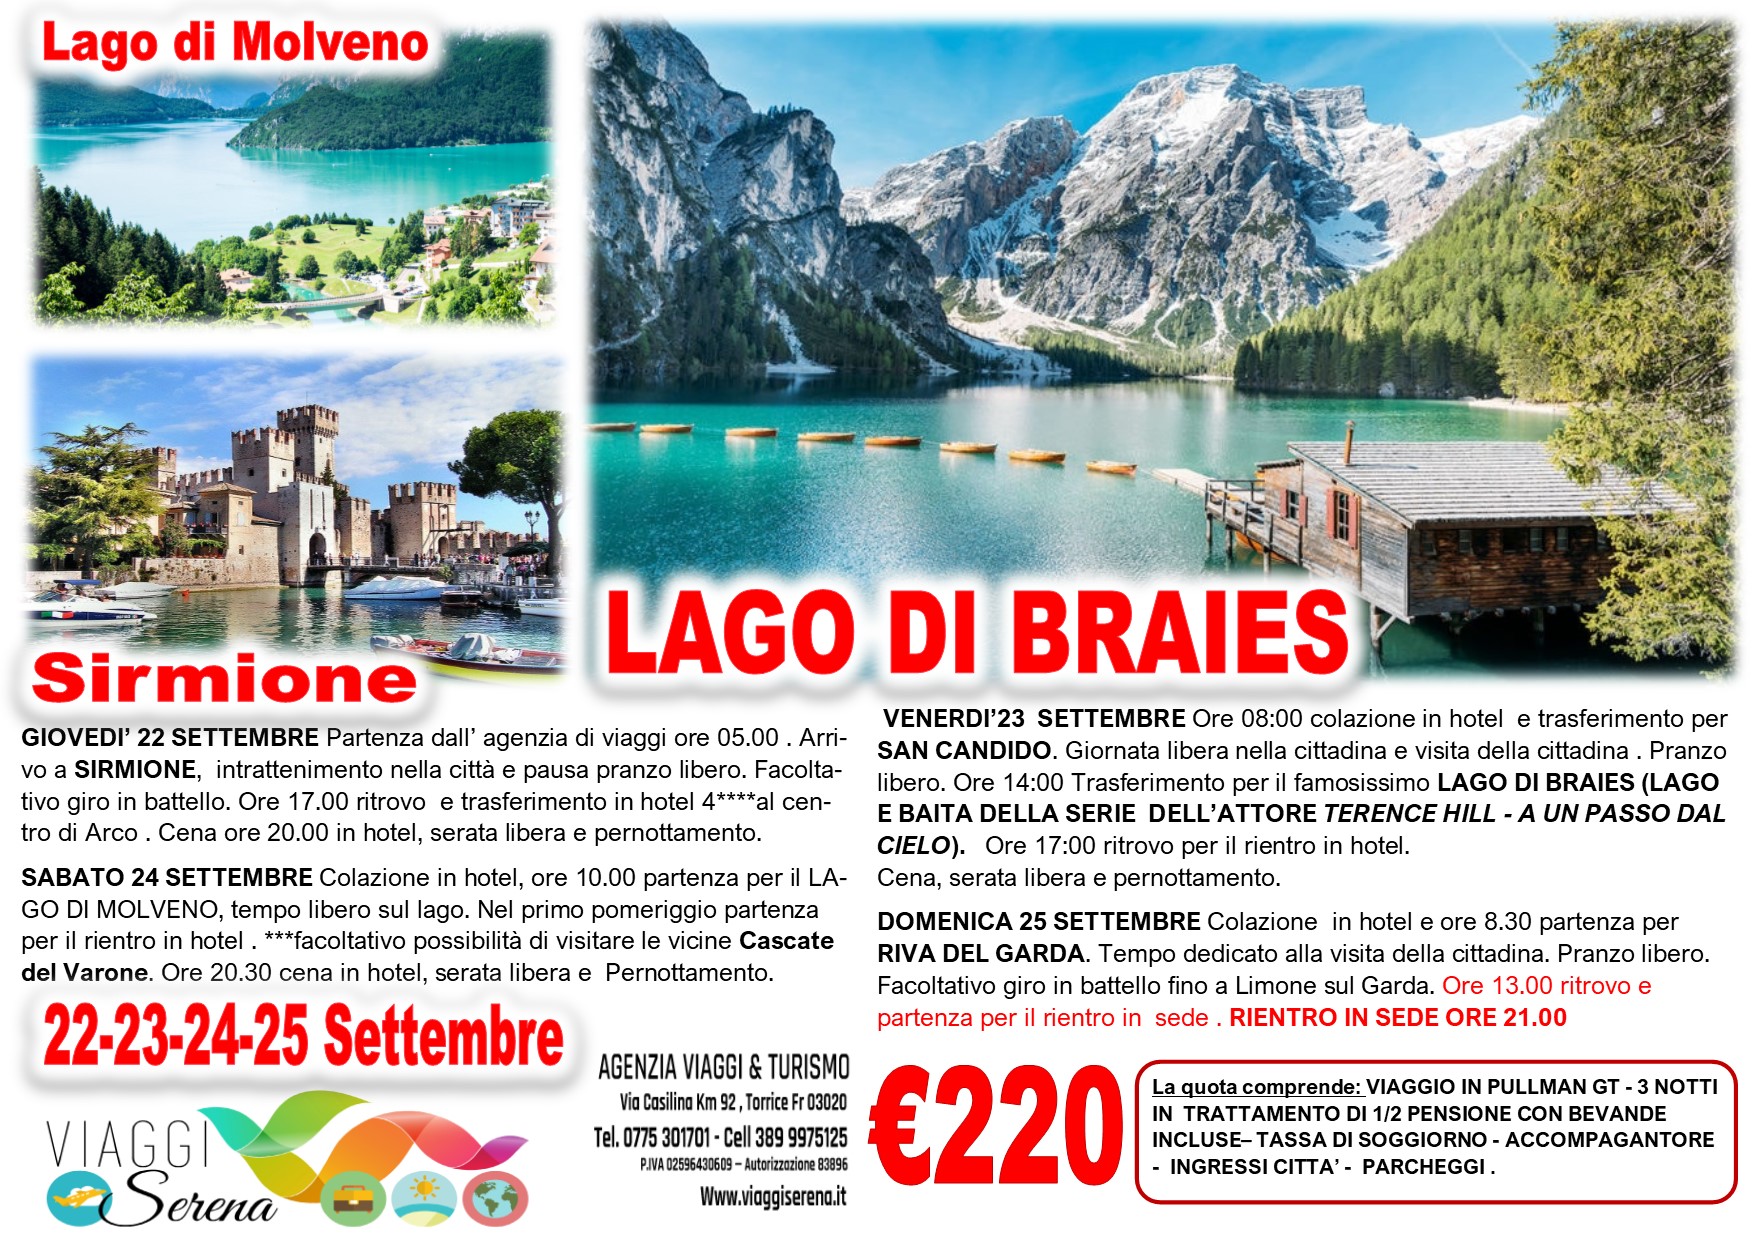 Viaggi di Gruppo: Lago di Braies & Lago di Molveno 22-23-24-25 Settembre € 220,00